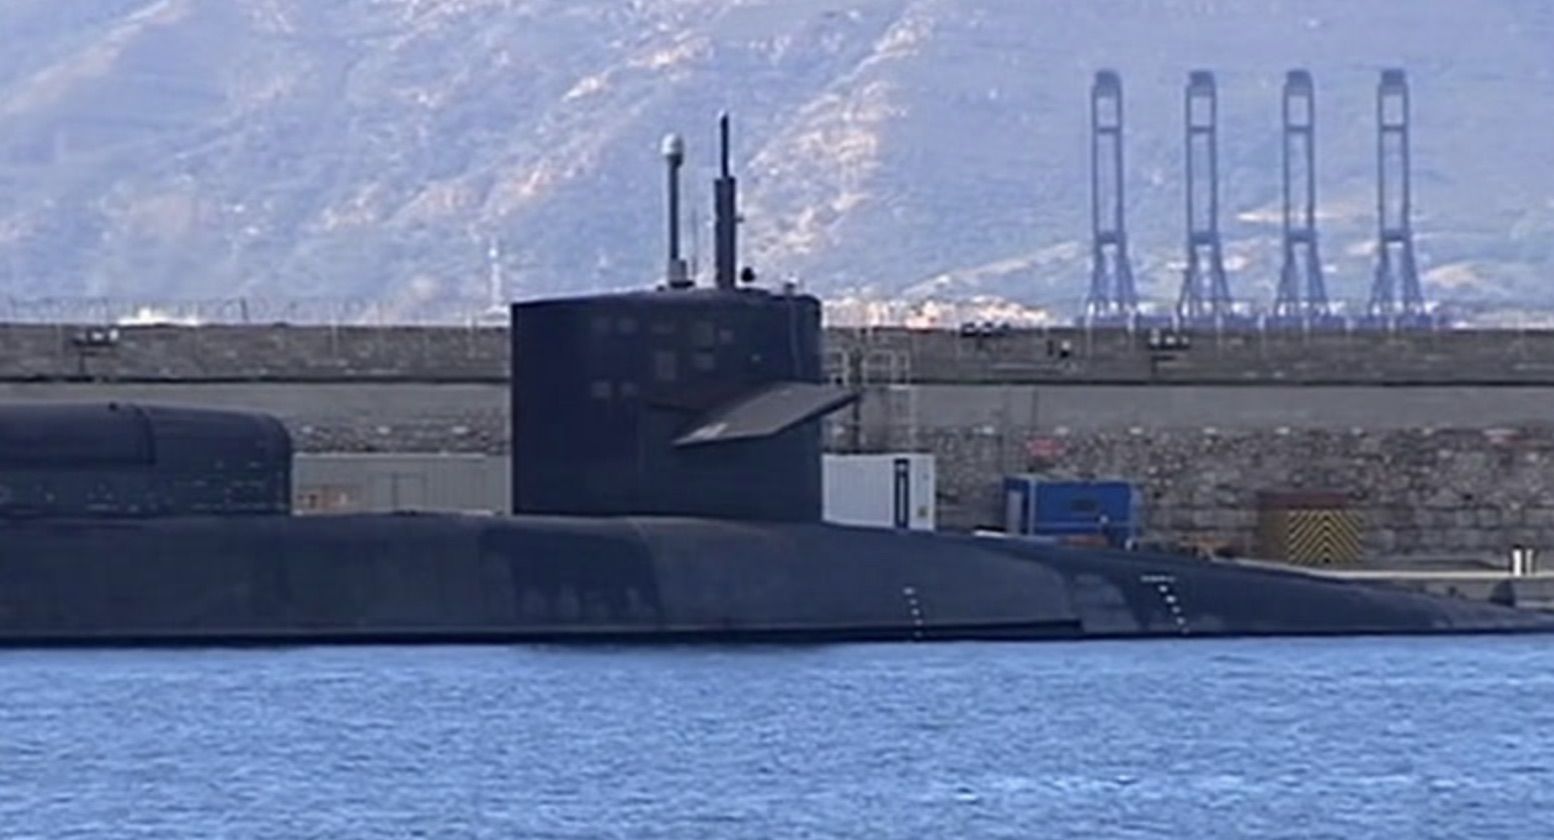 Submarino nuclear en la base militar de Gibraltar. IMAGEN: CANAL SUR